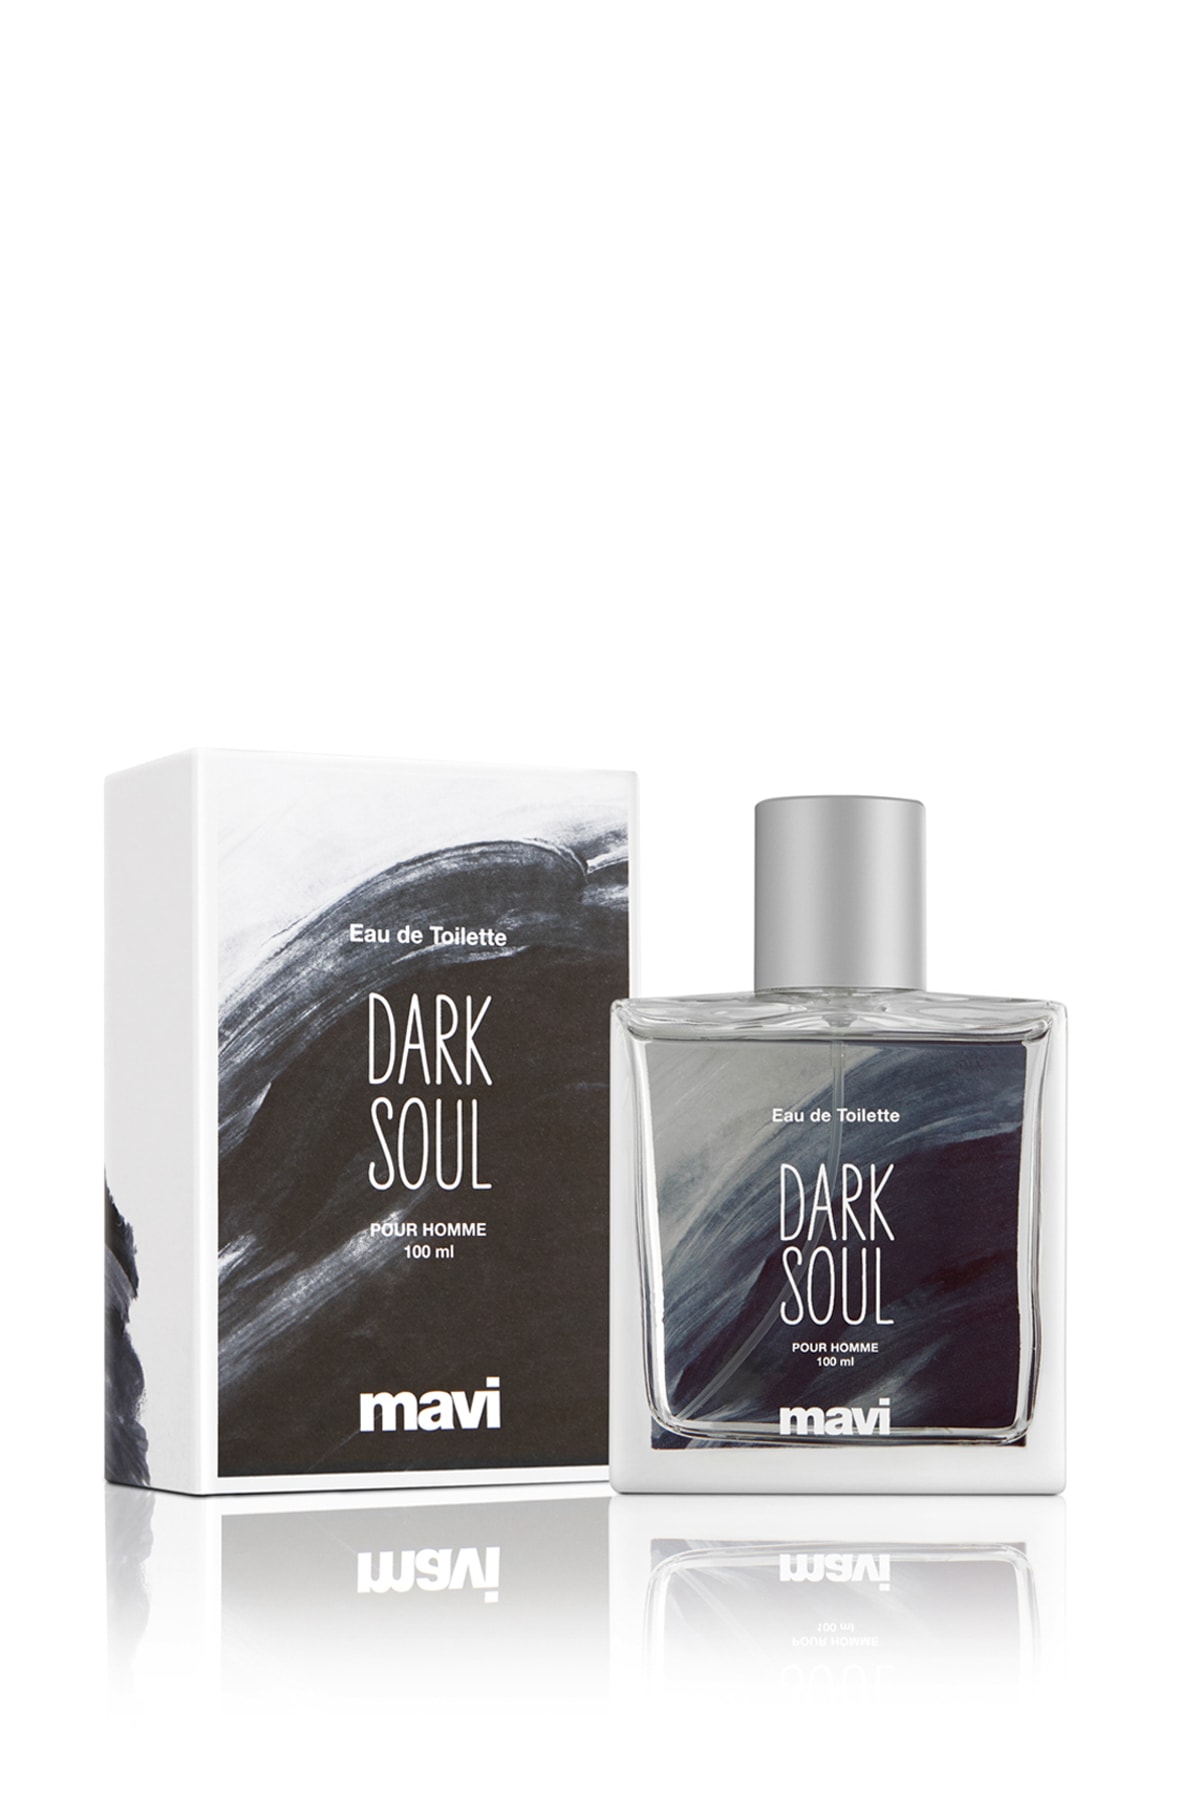 عطر مردانه دارک سول  Dark Soul ماوی Mavi